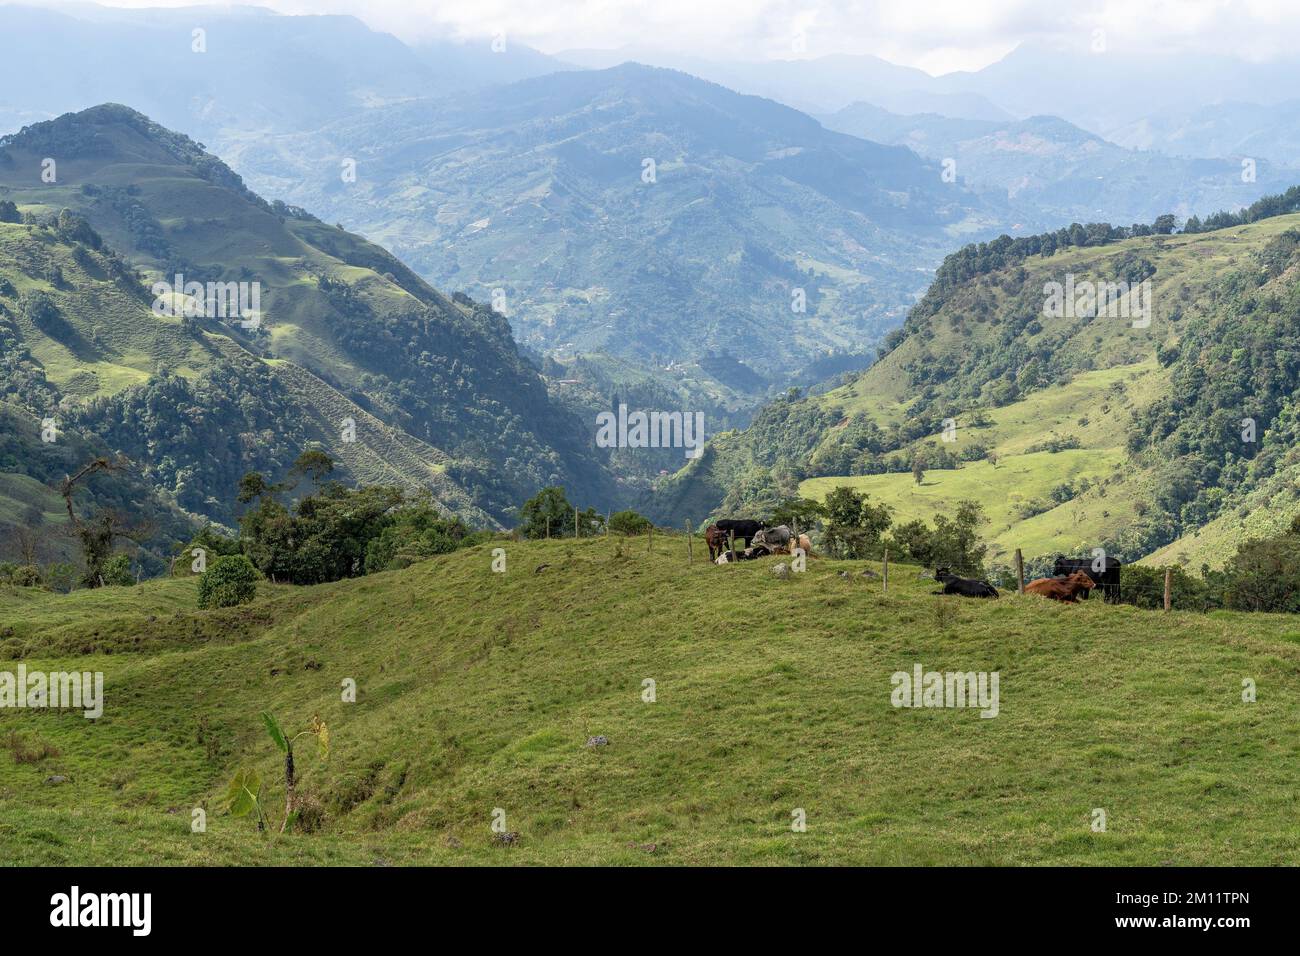 South America, Colombia, Departamento de Antioquia, Colombian Andes, Jardín, cows in the Andean landscape on the way to Cueva del Esplendor Stock Photo